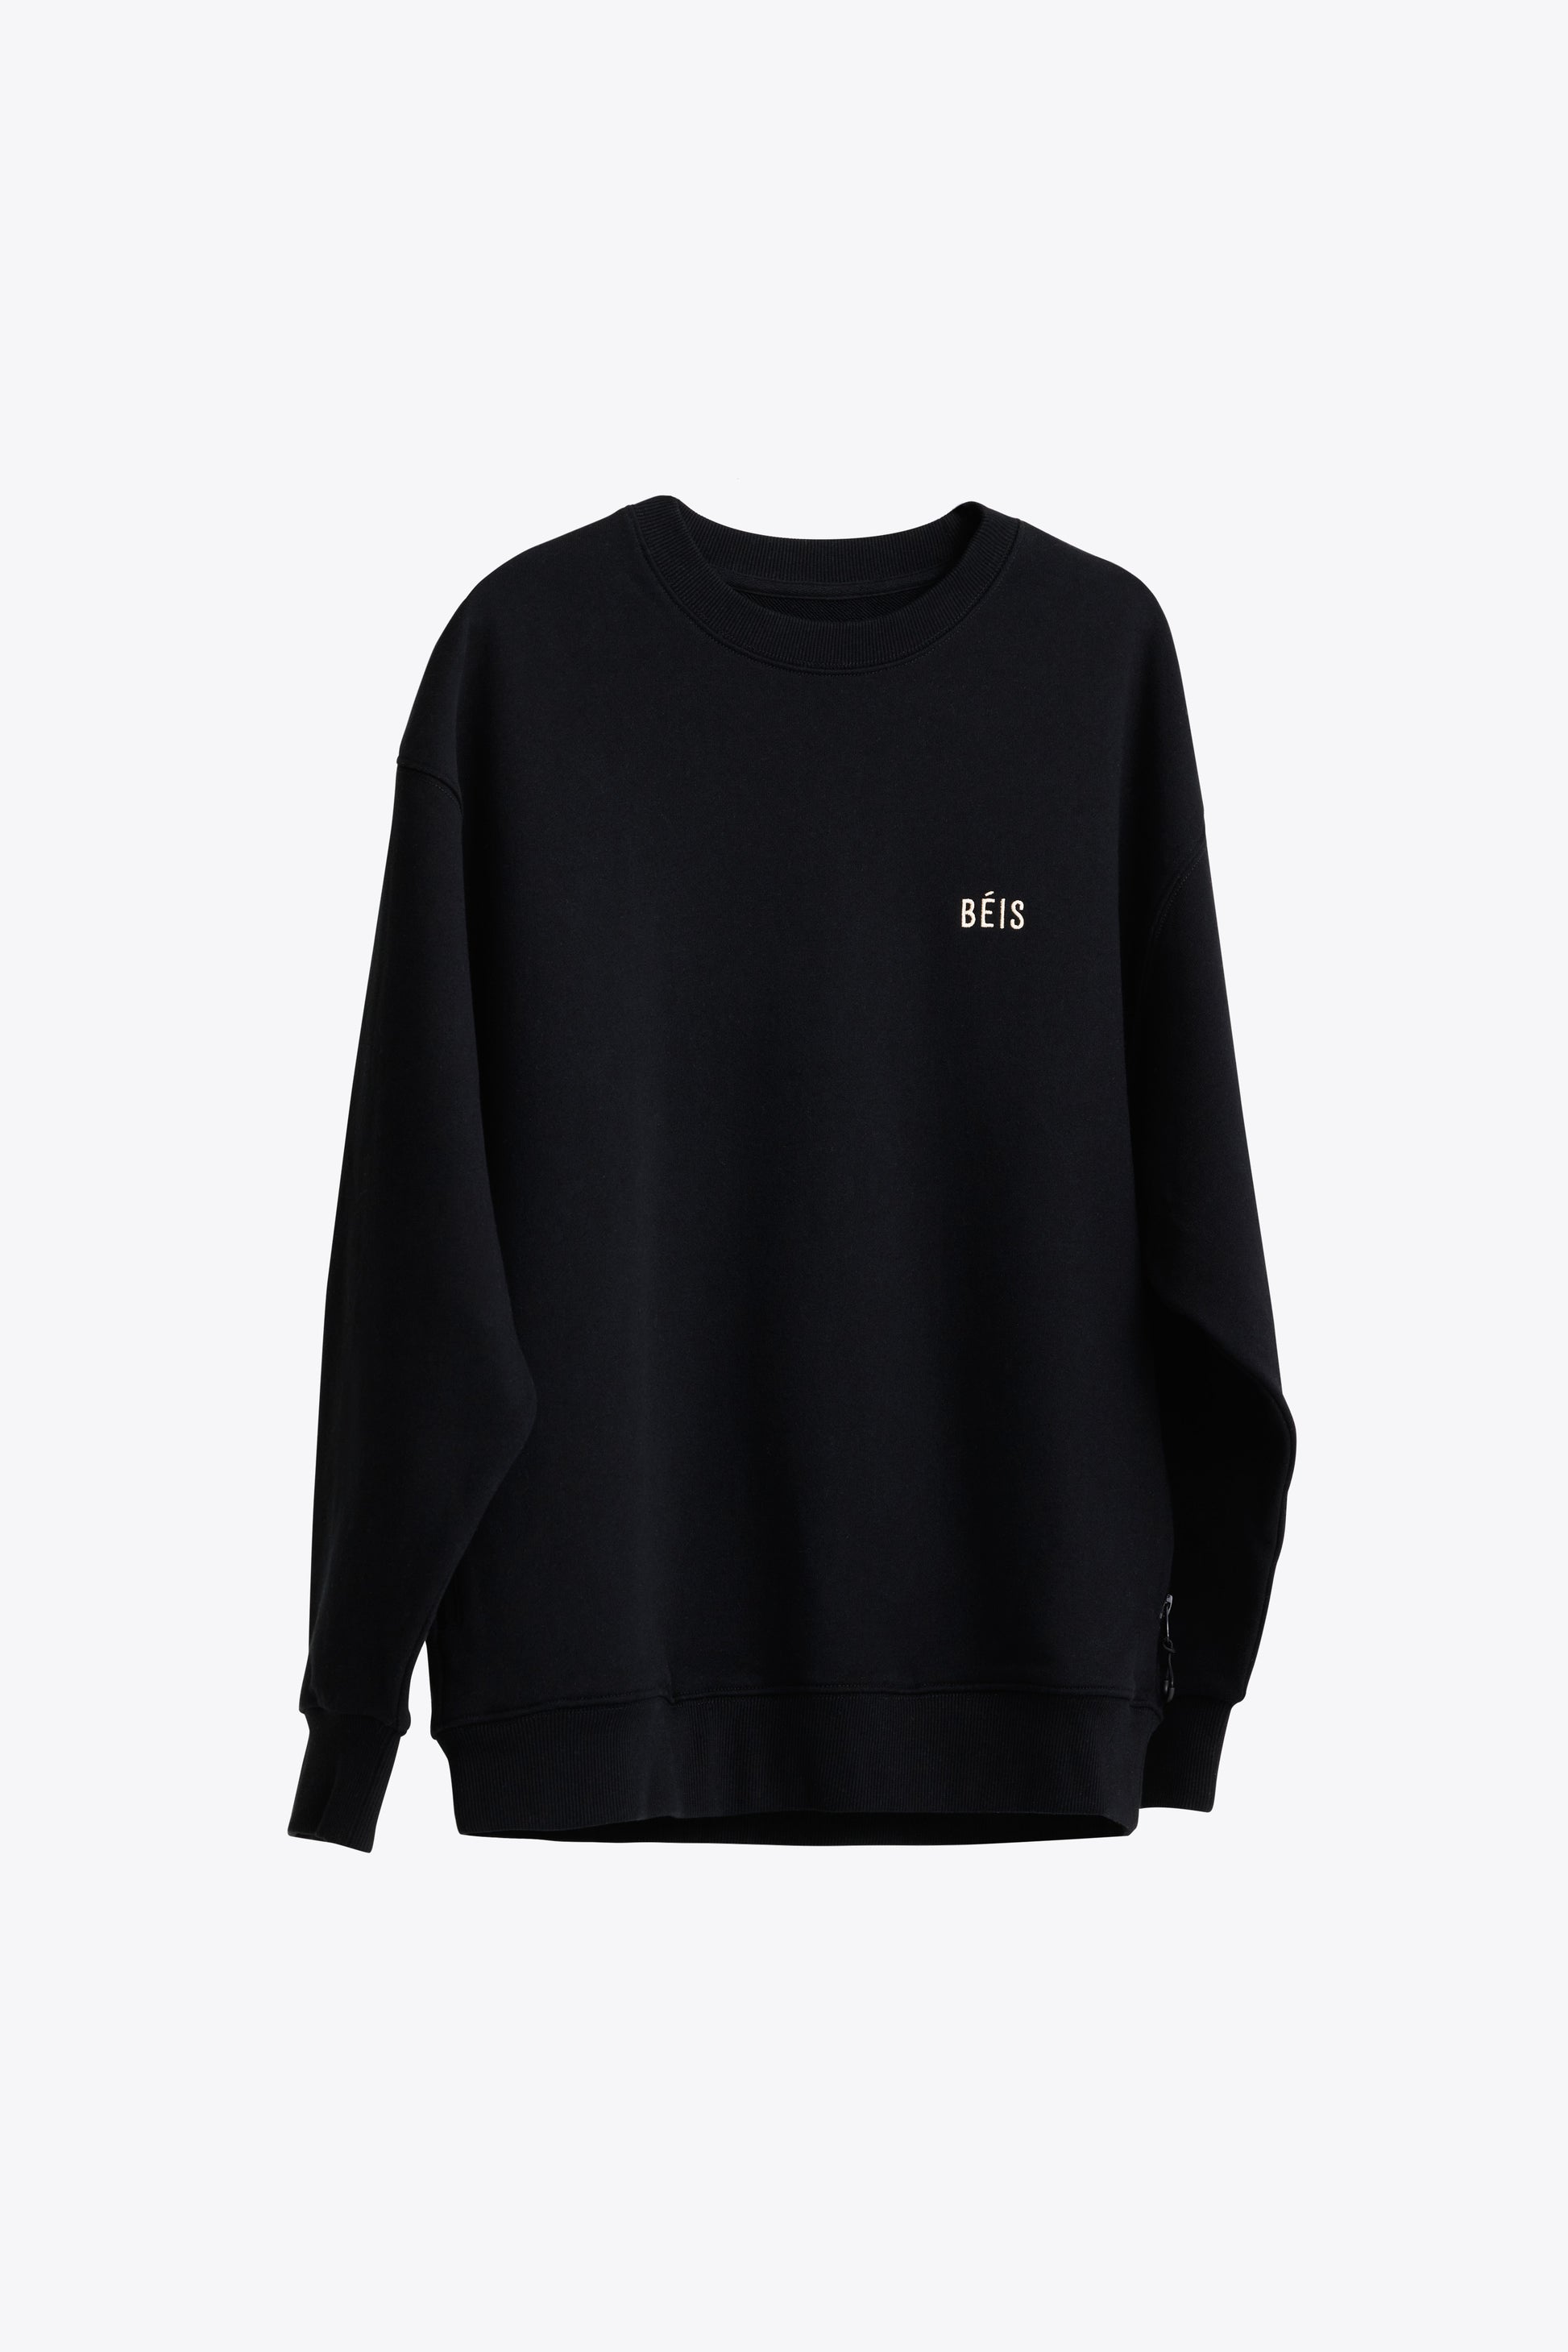 BÉIS 'The Sweatshirt' in Black - Sweatshirt With Zipper Pockets